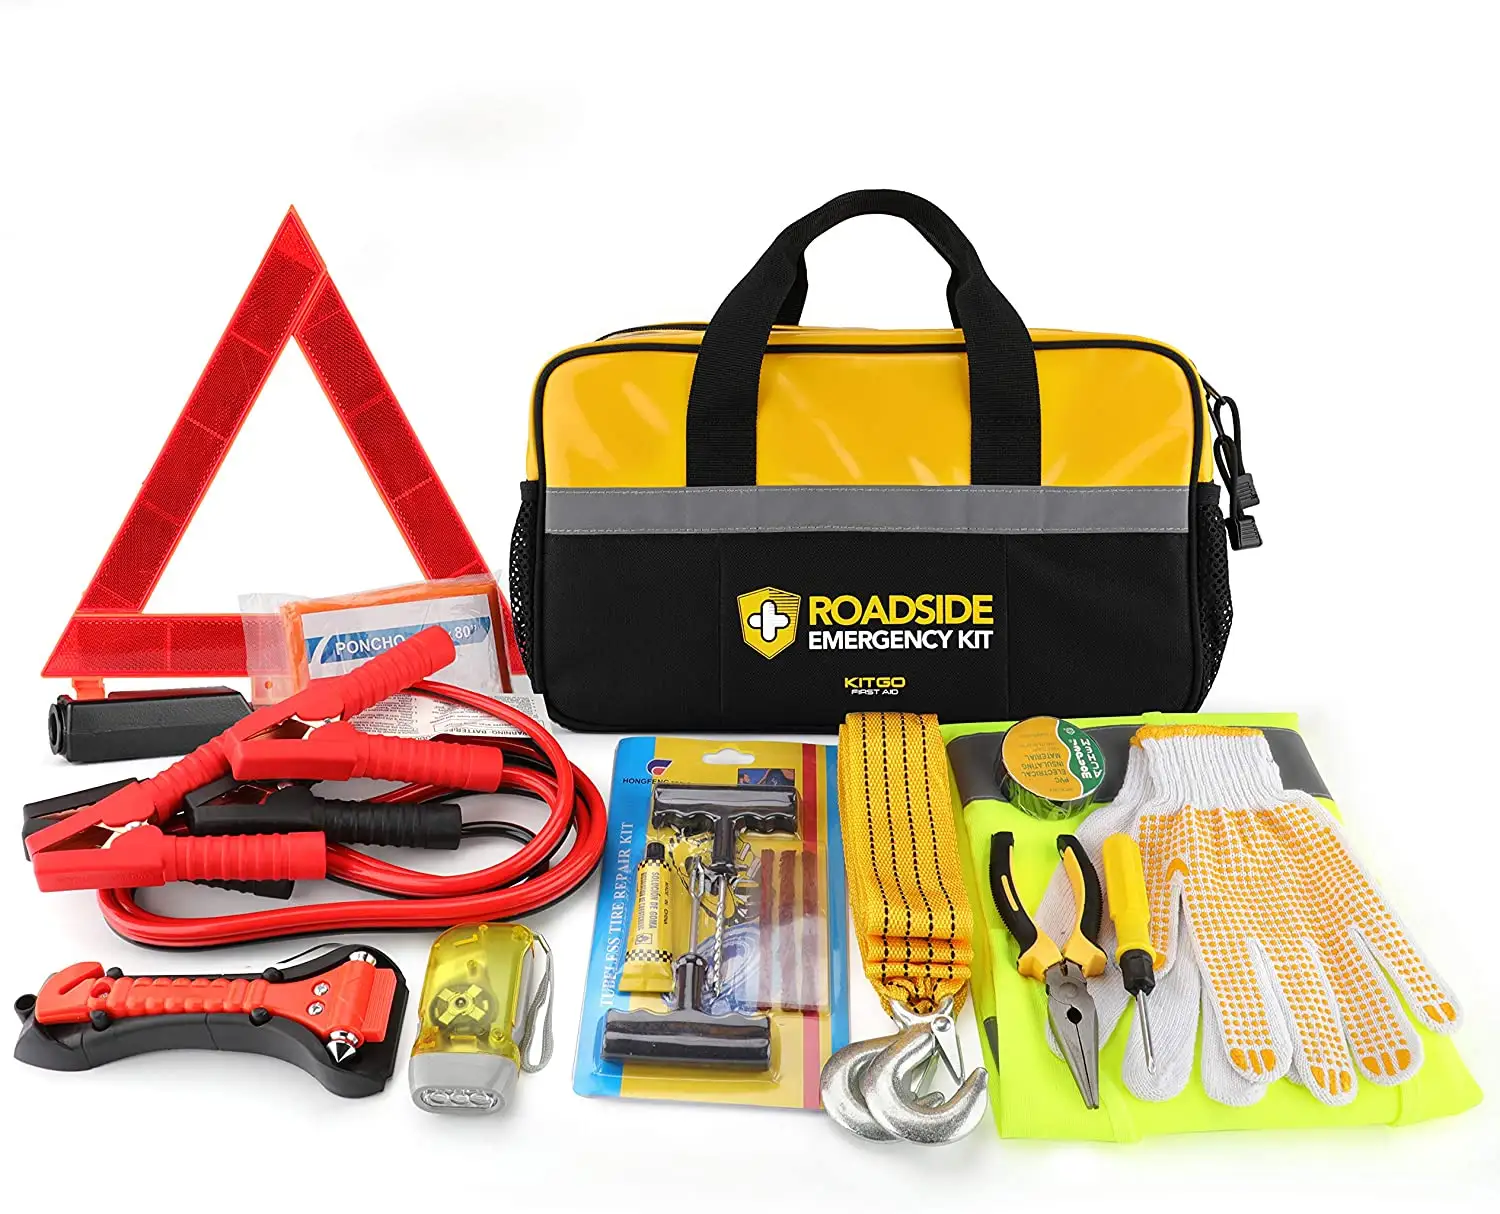 Kit de acessórios para resgate de sobrevivência, ferramenta de emergência para segurança automotiva, emergência, assistência na estrada, kit de acessórios de resgate